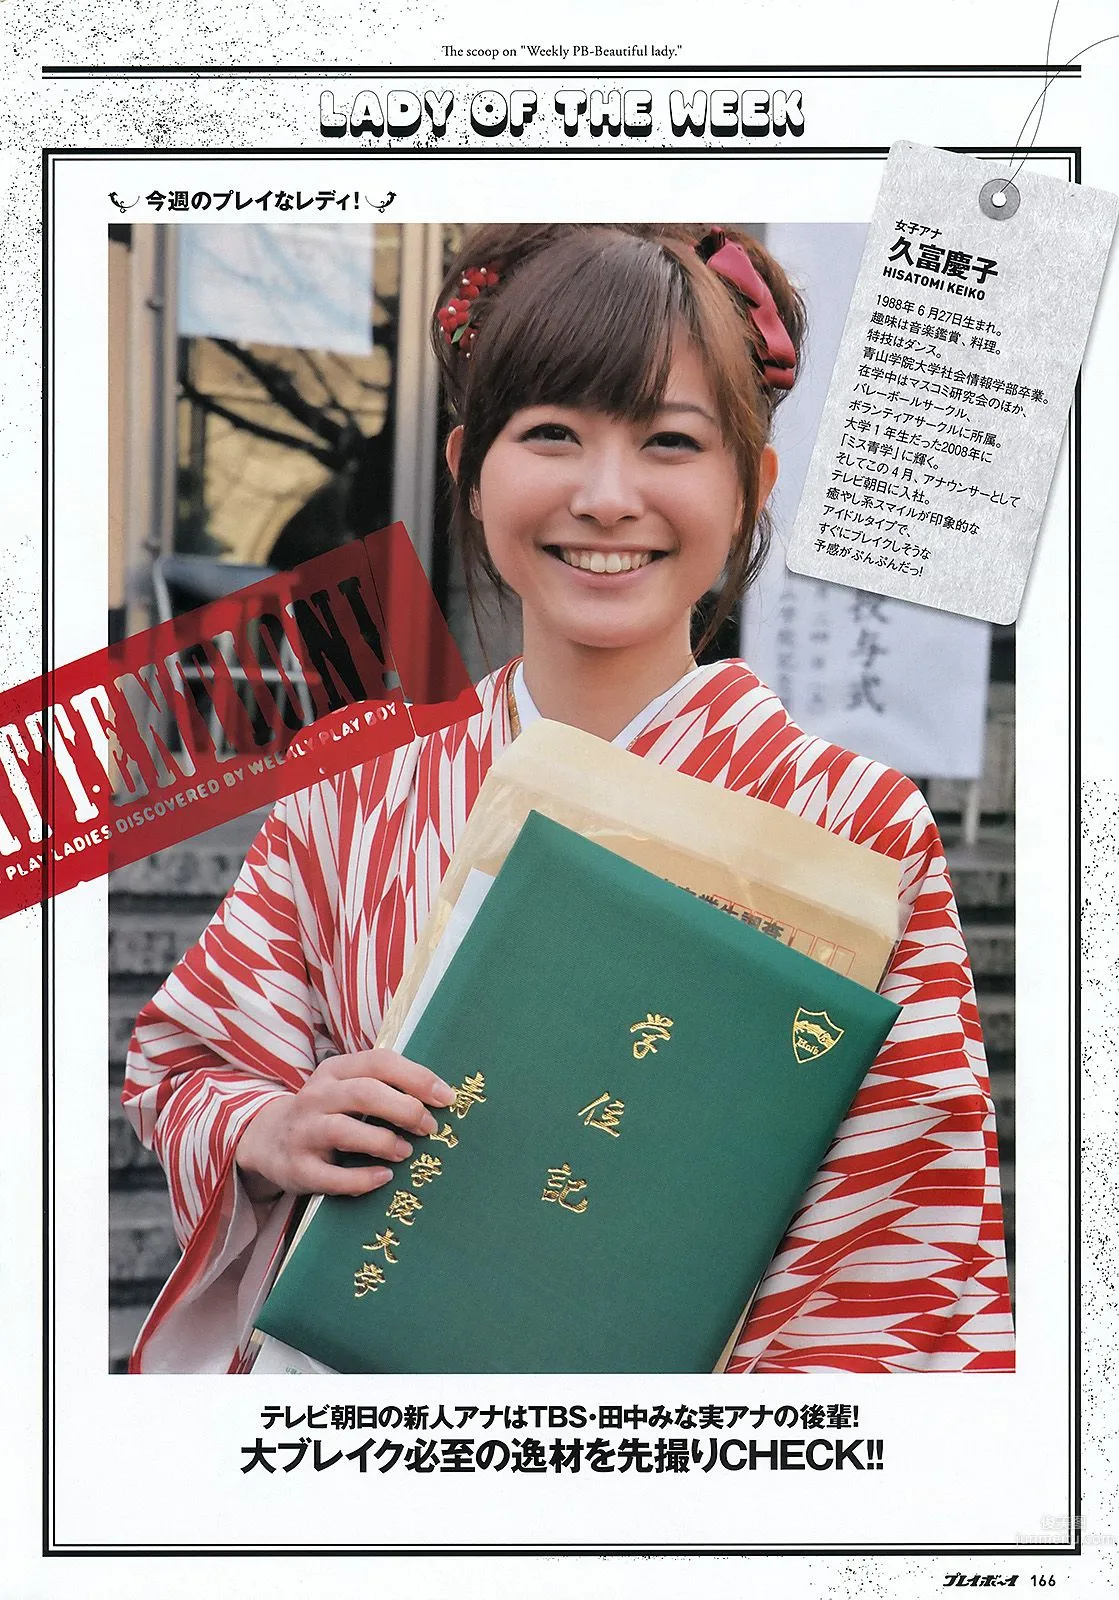 逢沢りな 中村静香 藤原令子 光宗薫 [Weekly Playboy] 2012年No.17 写真杂志45